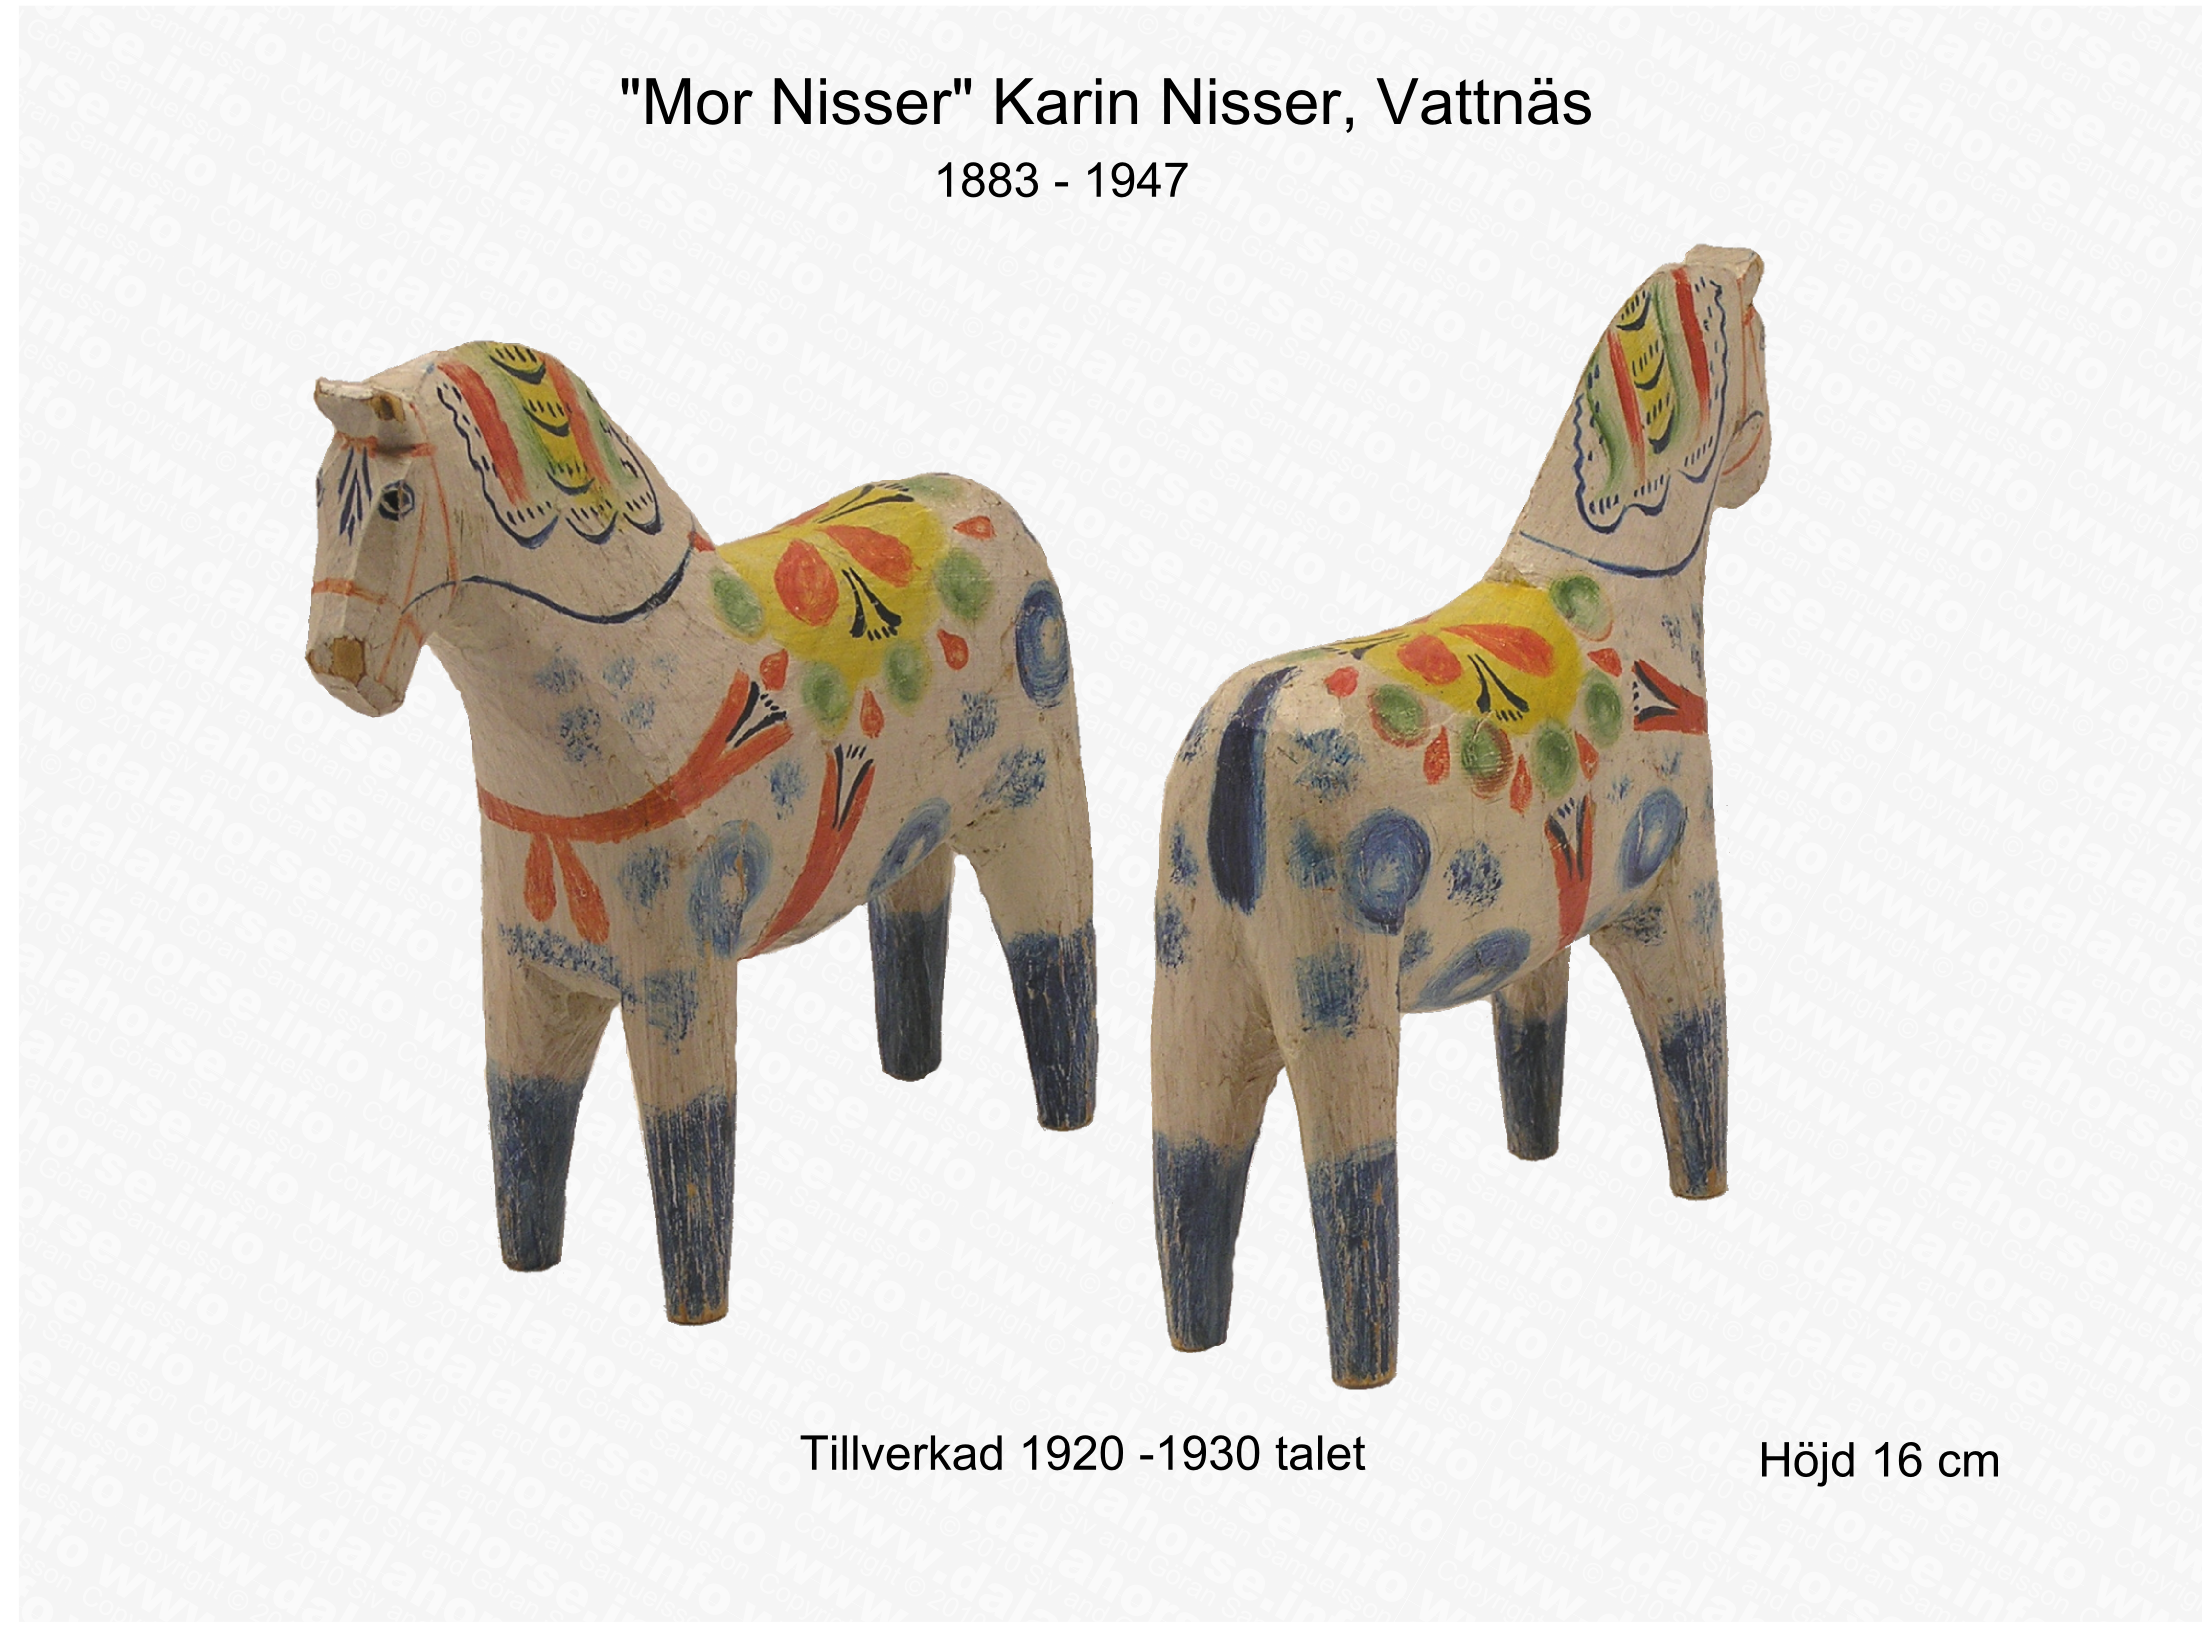 Häst av Karin, 1920-1930